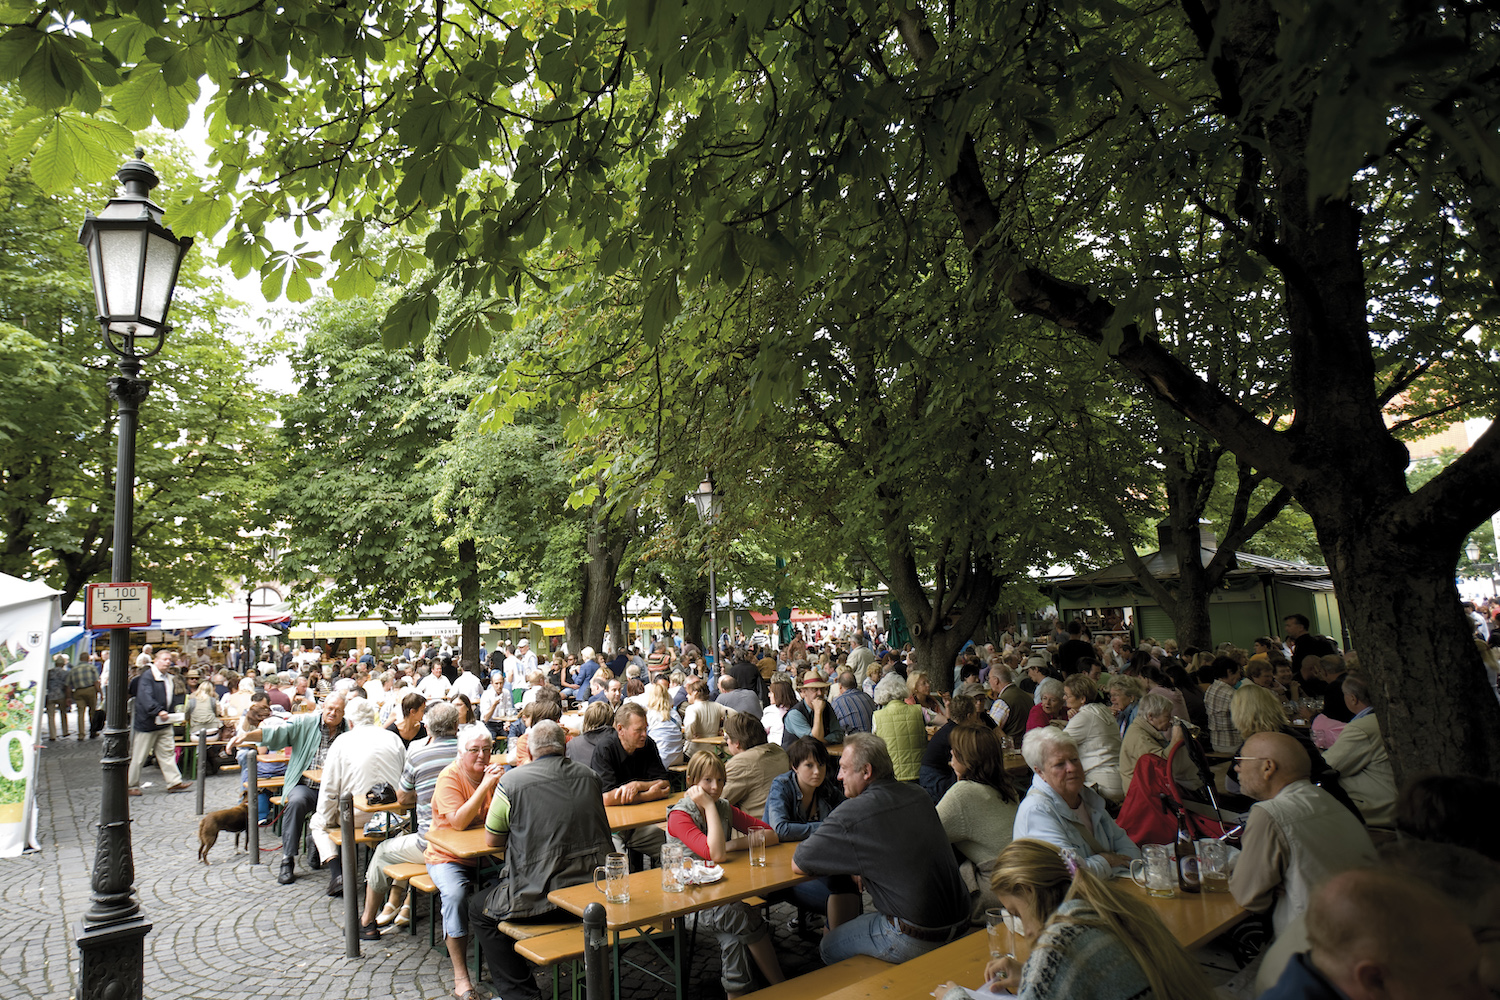 The beer garden at Viktualienmarkt